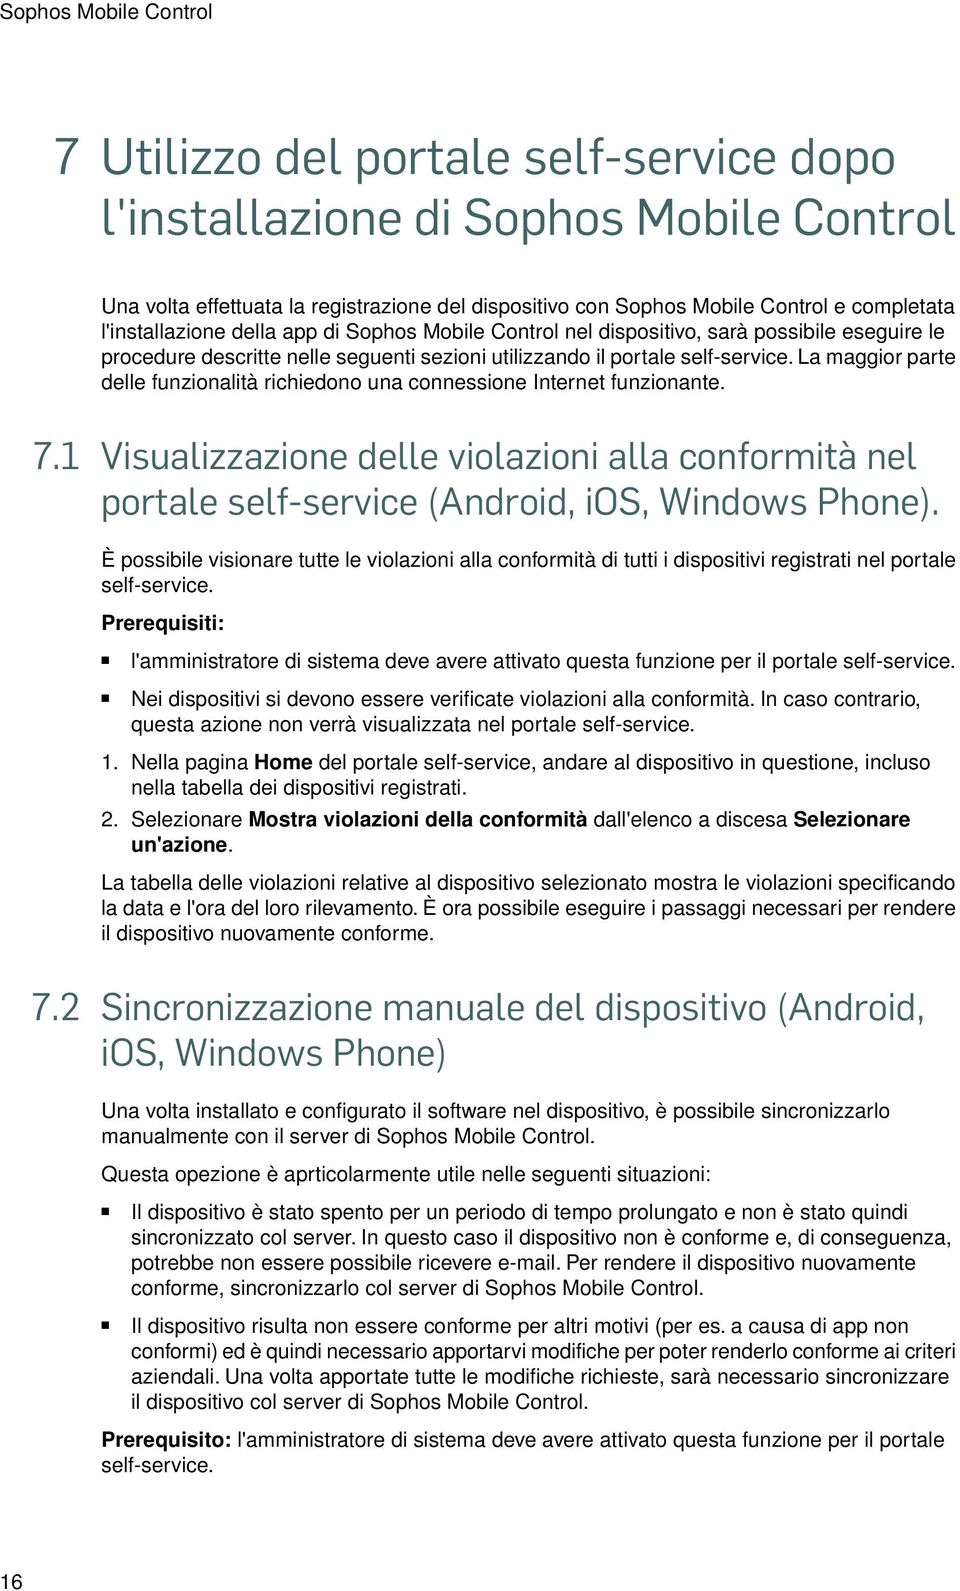 La maggior parte delle funzionalità richiedono una connessione Internet funzionante. 7.1 Visualizzazione delle violazioni alla conformità nel portale self-service (Android, ios, Windows Phone).